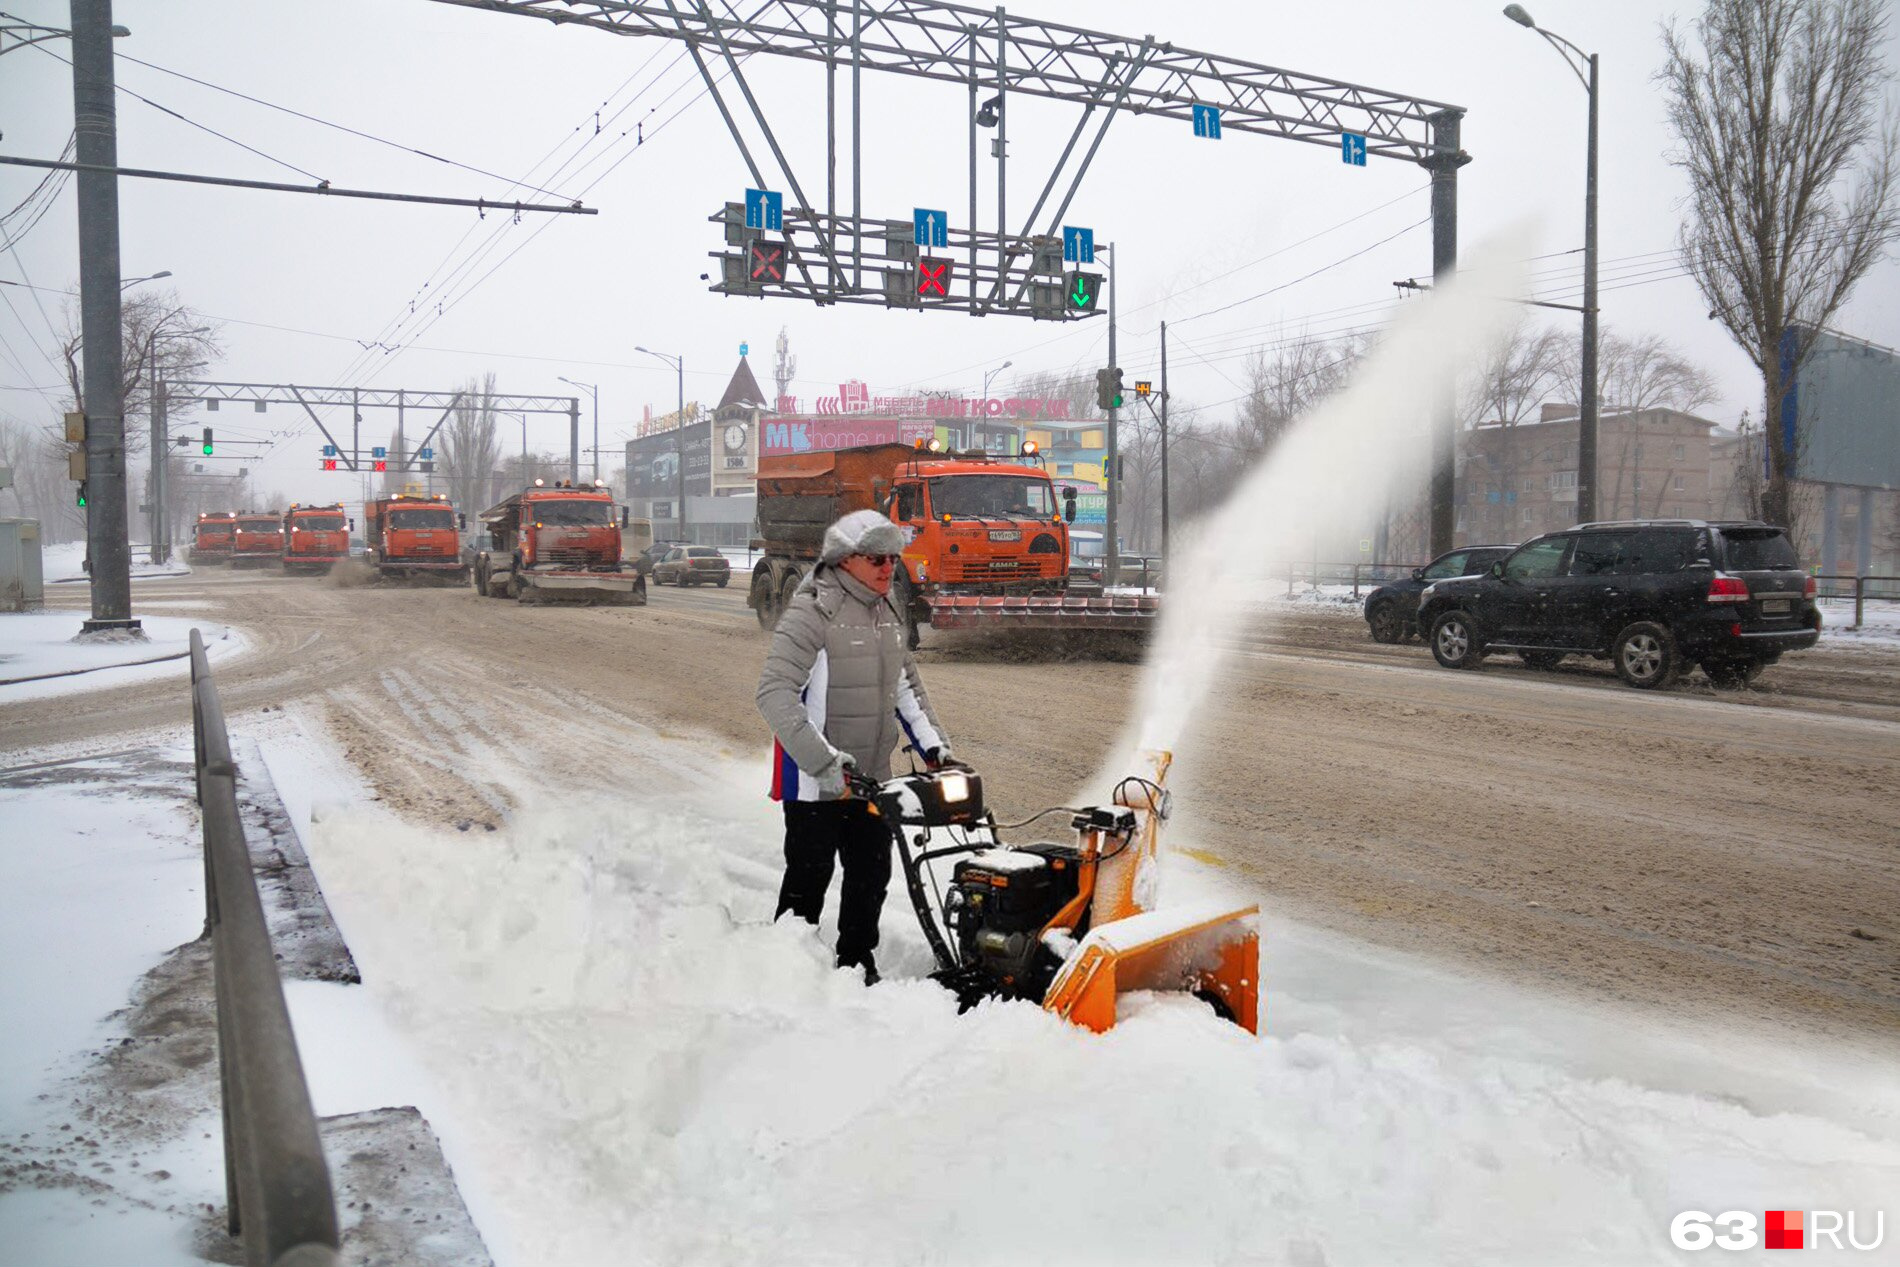 Фото Азарова за уборкой снега <a href="https://63.ru/text/gorod/65911841" target="_blank" class="_">стали основной для мемов</a>